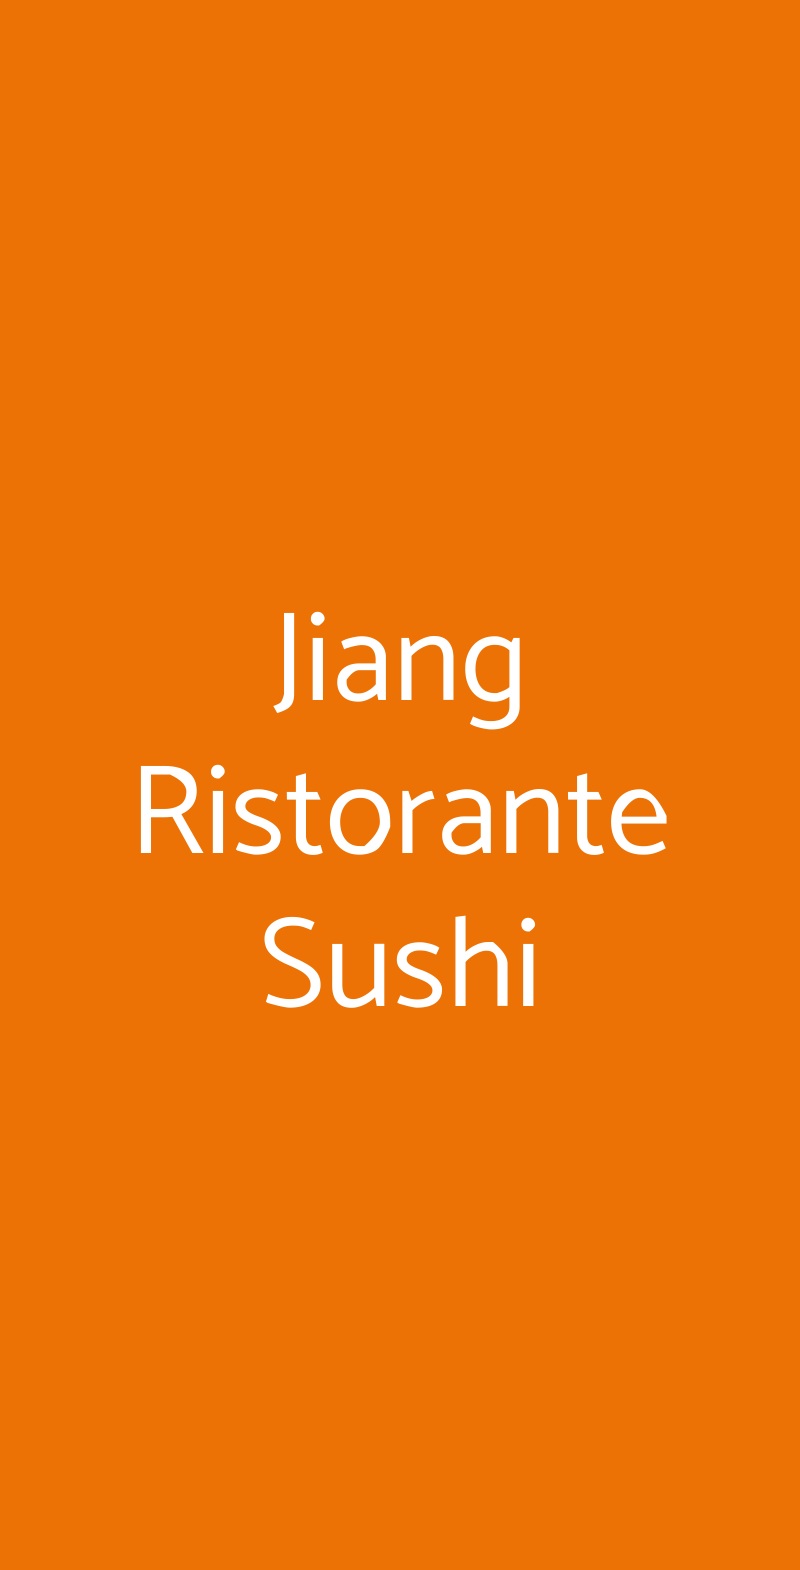 Jiang Ristorante Sushi Milano menù 1 pagina